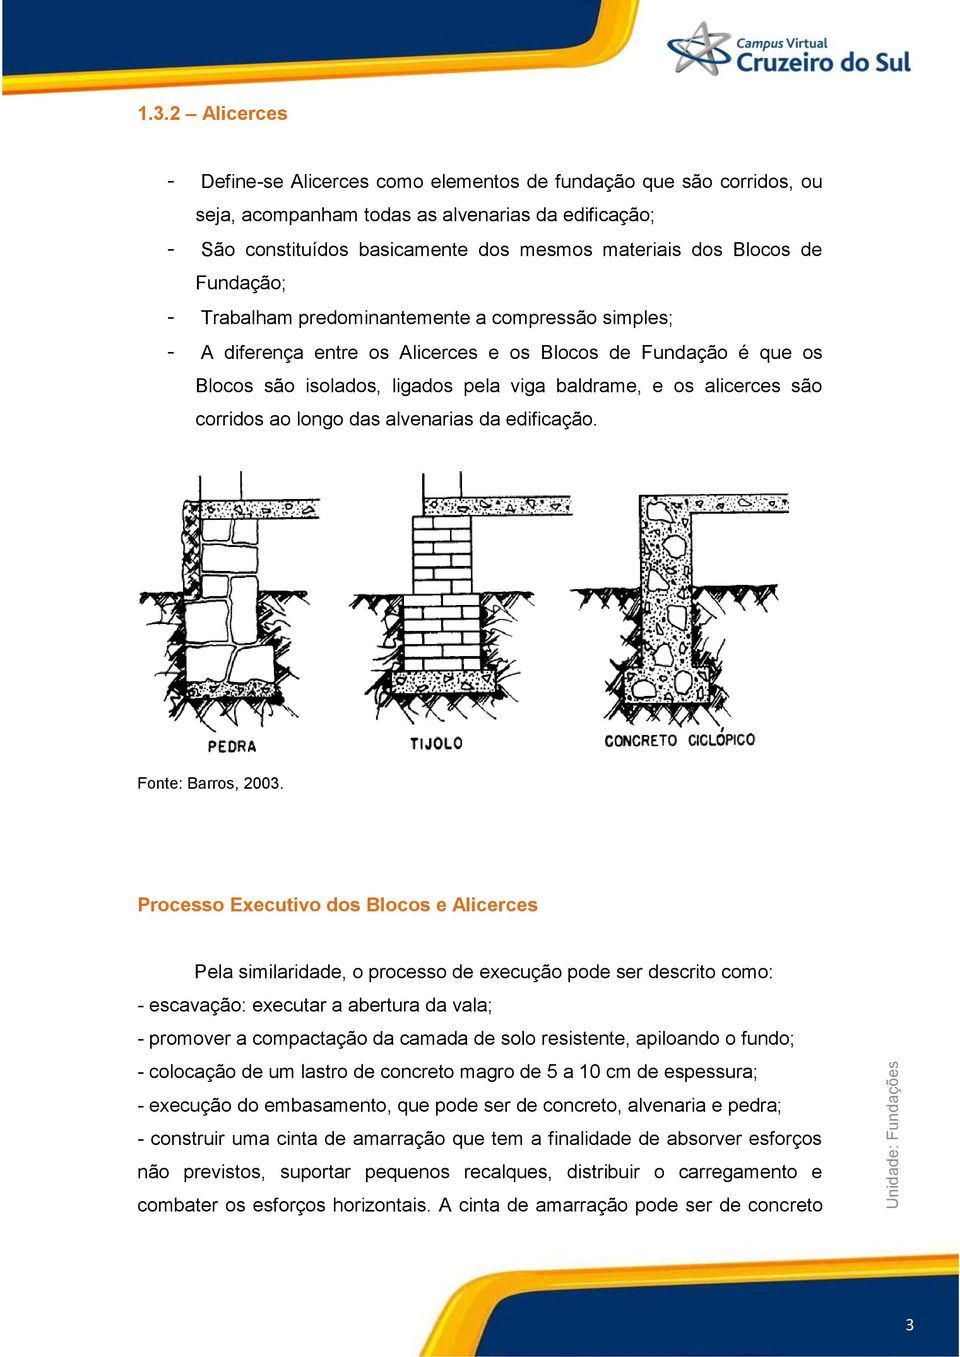 alicerces são corridos ao longo das alvenarias da edificação. Fonte: Barros, 2003.